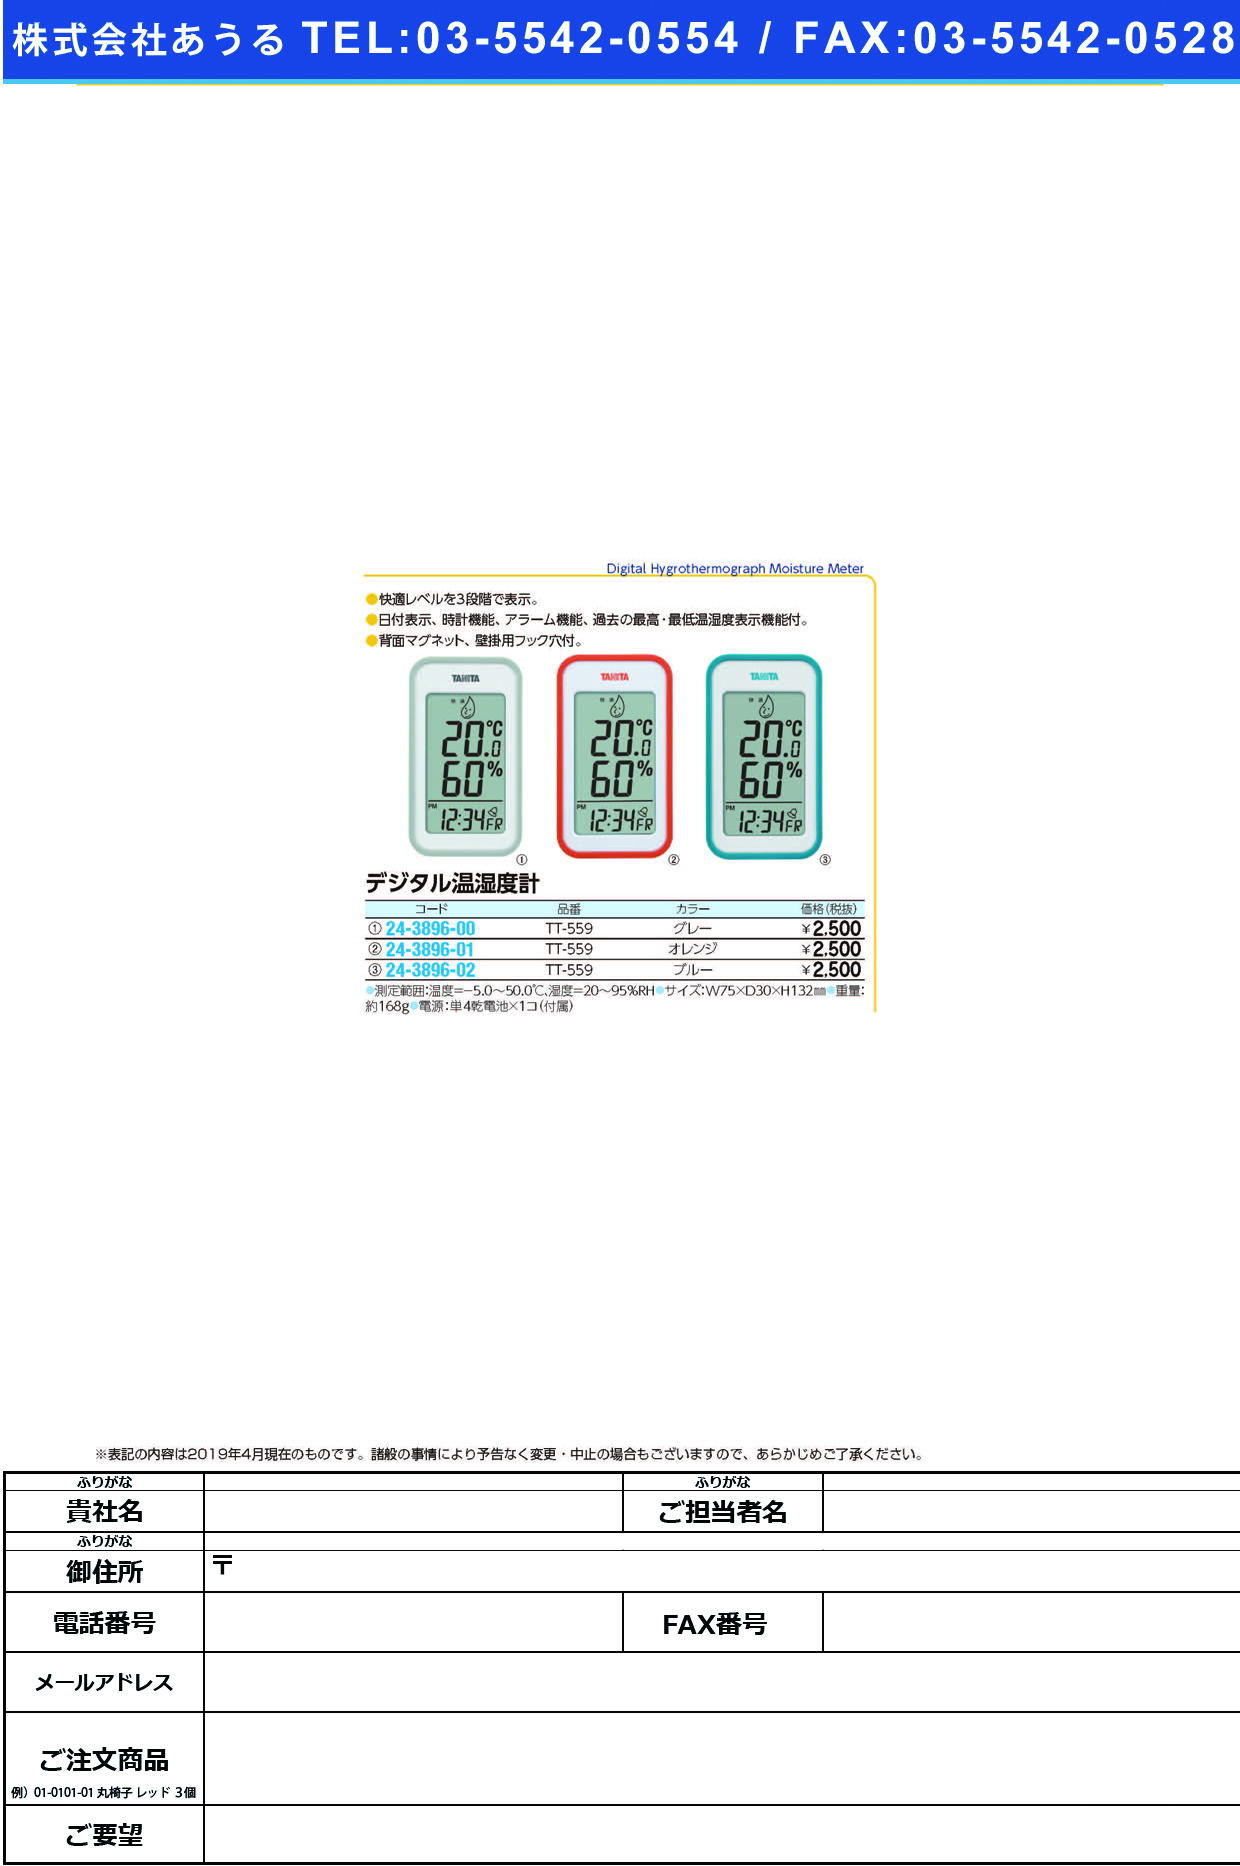 (24-3896-02)デジタル温湿度計 TT-559(ﾌﾞﾙｰ) ﾃﾞｼﾞﾀﾙｵﾝｼﾂﾄﾞｹｲ(タニタ)【1個単位】【2019年カタログ商品】